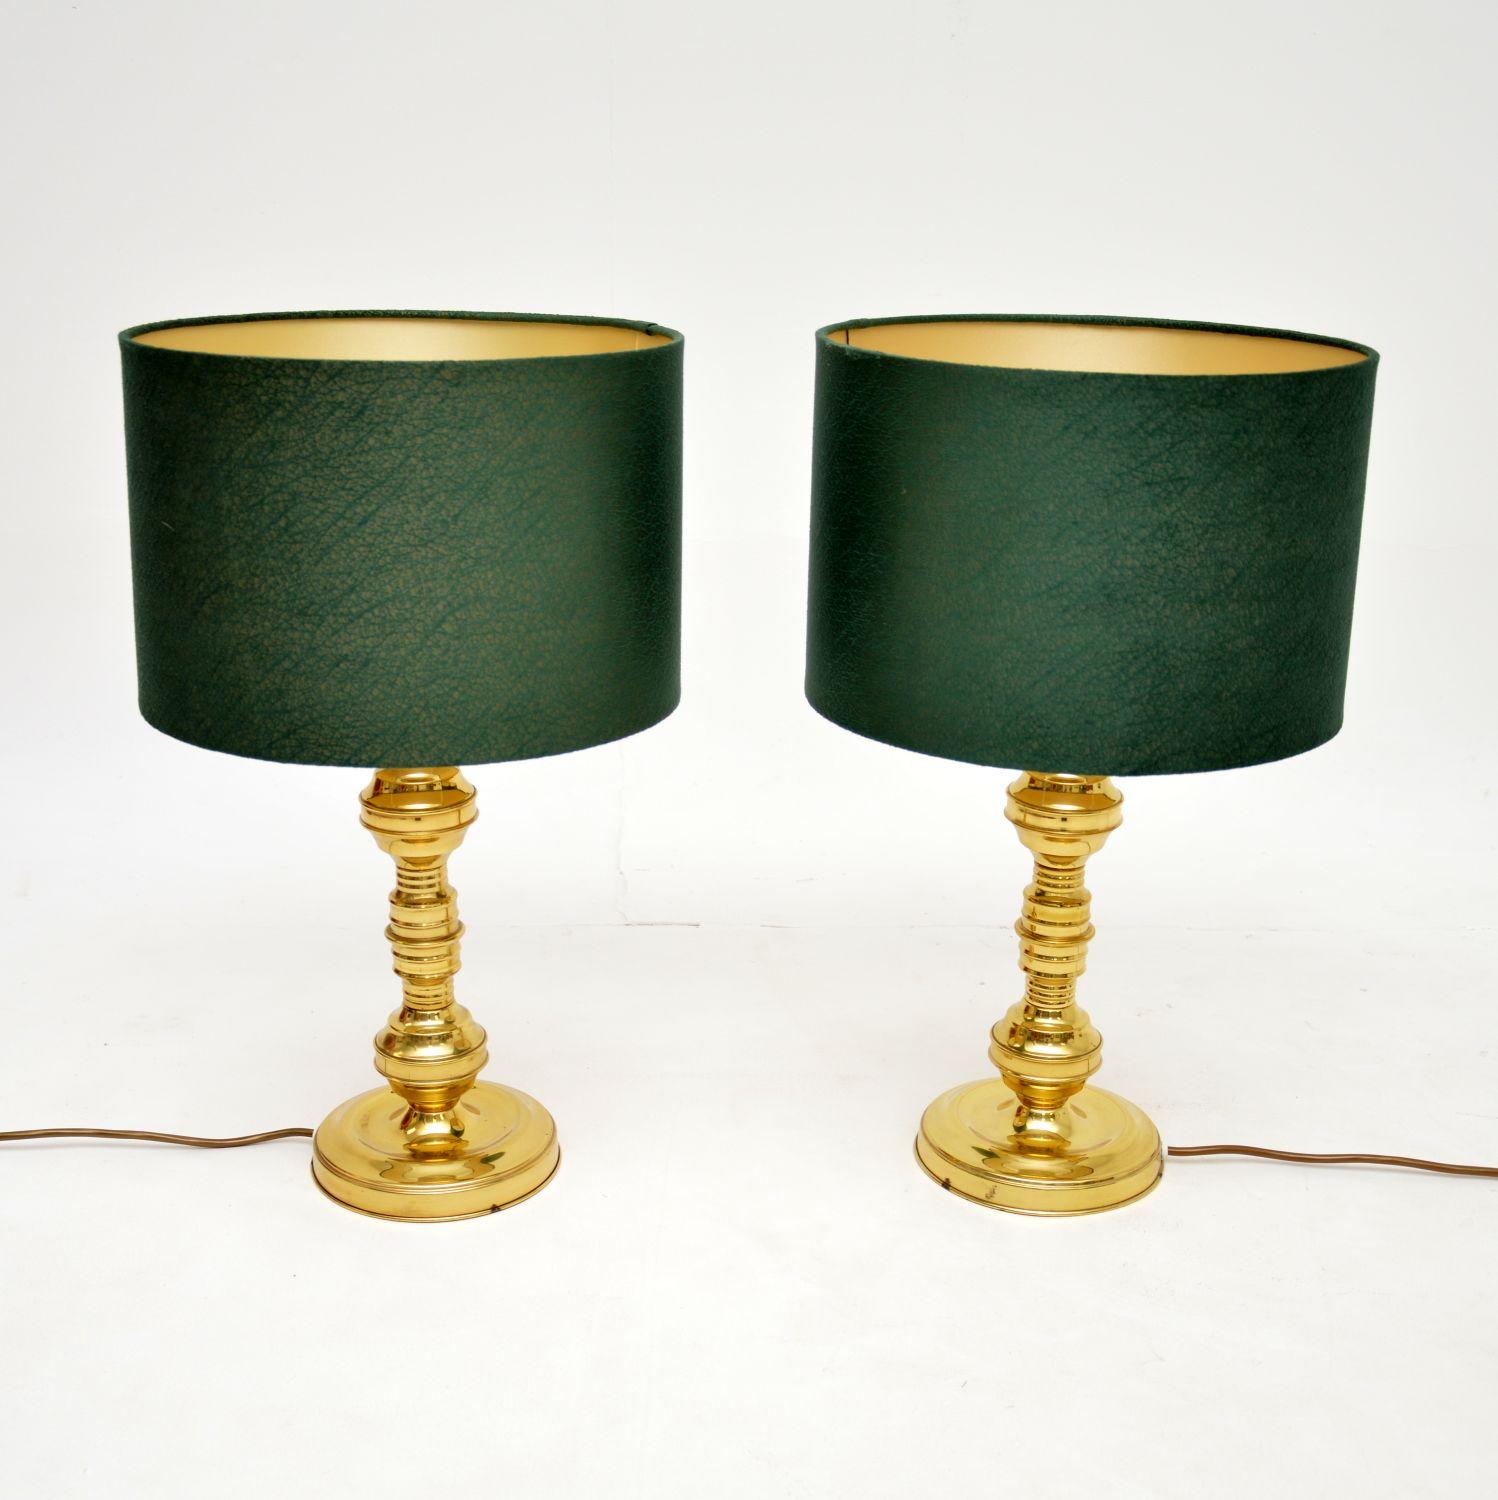 Ein sehr stilvolles Paar von Vintage-Tischlampen aus Messing. Sie wurden in England hergestellt und stammen aus den 1970er Jahren.

Die Qualität ist ausgezeichnet, sie haben eine schöne Größe und wurden mit modernen grünen Samttönen kombiniert.

Wir